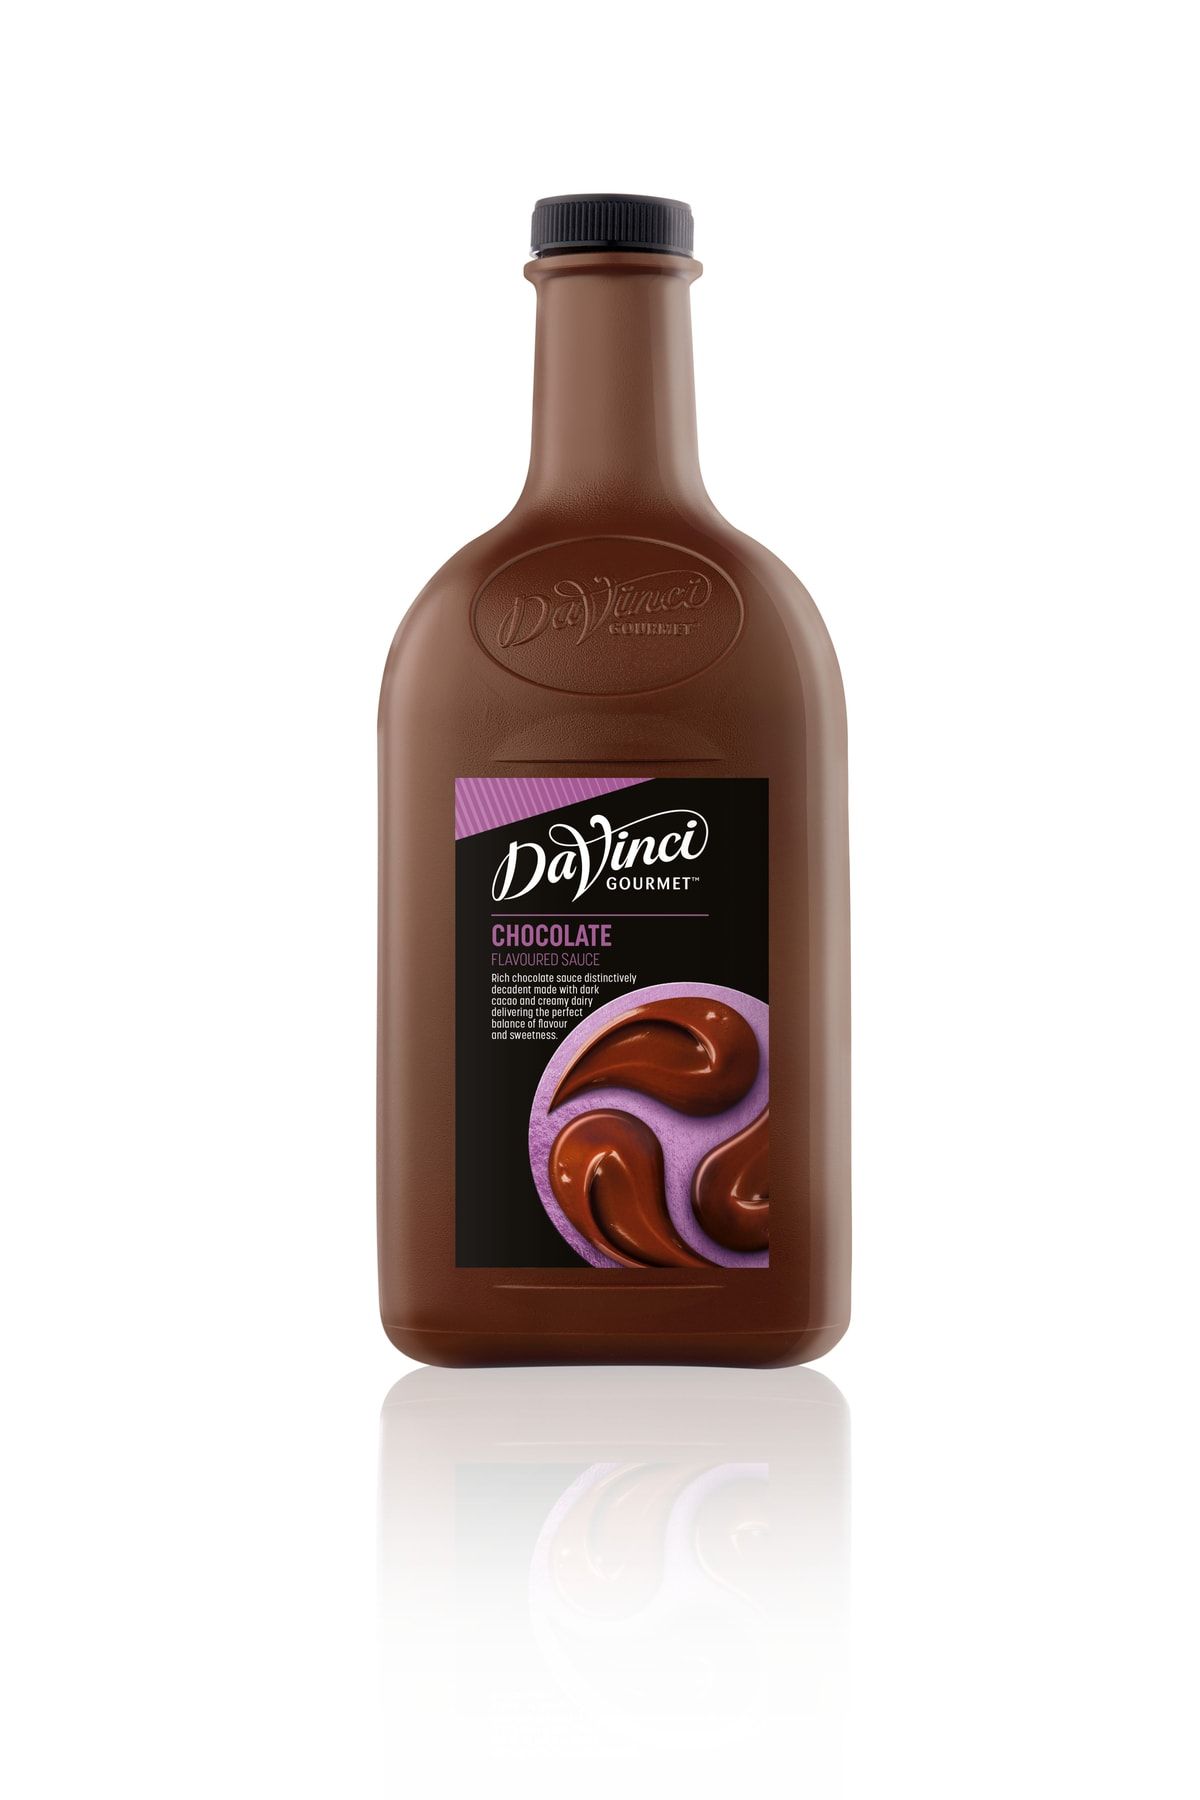 Da Vinci Çikolata Bar Sosu 2lt 2.7kg